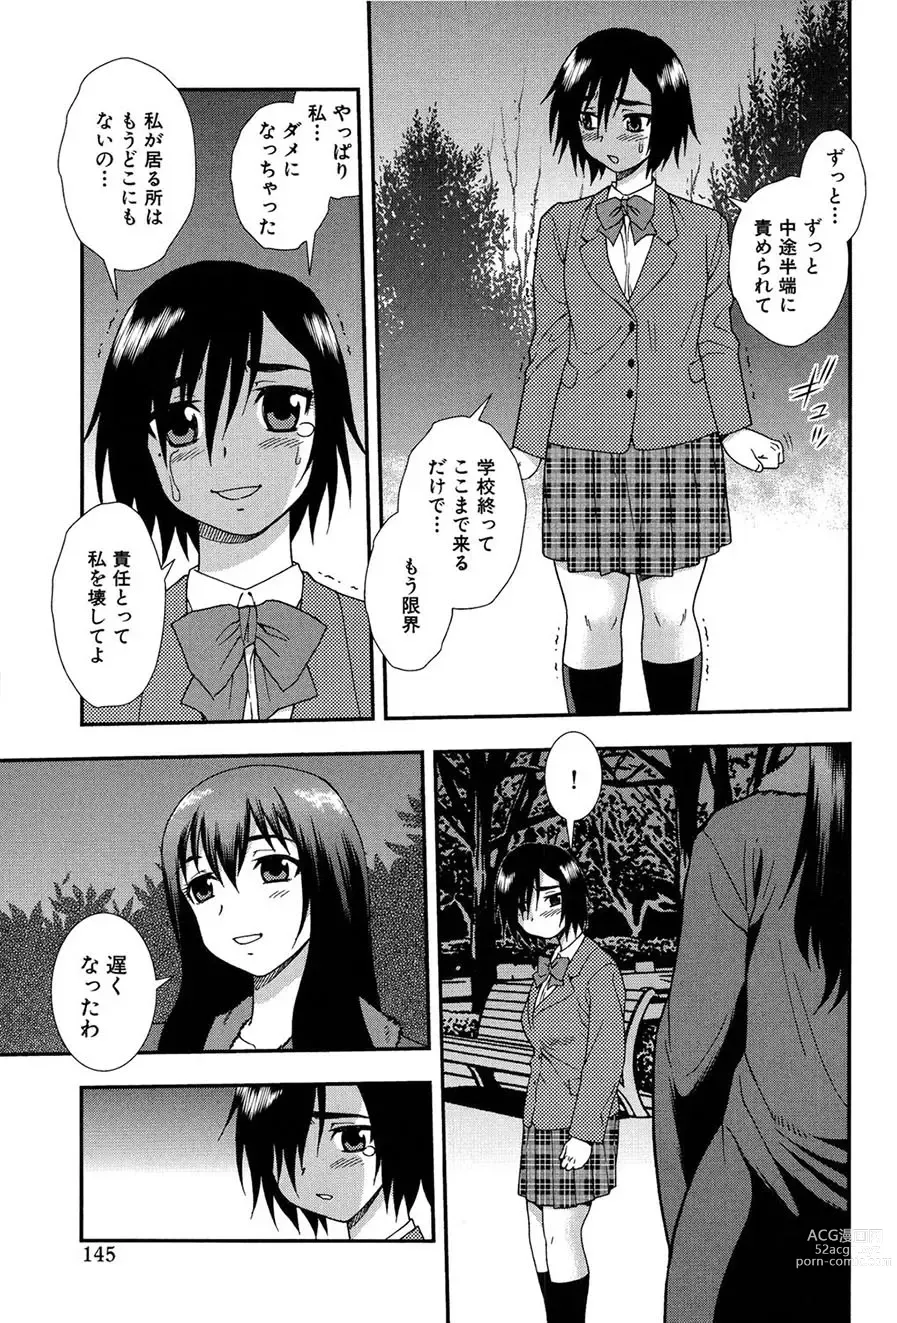 Page 144 of manga Onna Kyoushi Chijoku no Kusari 2 -NIGHTMARE-